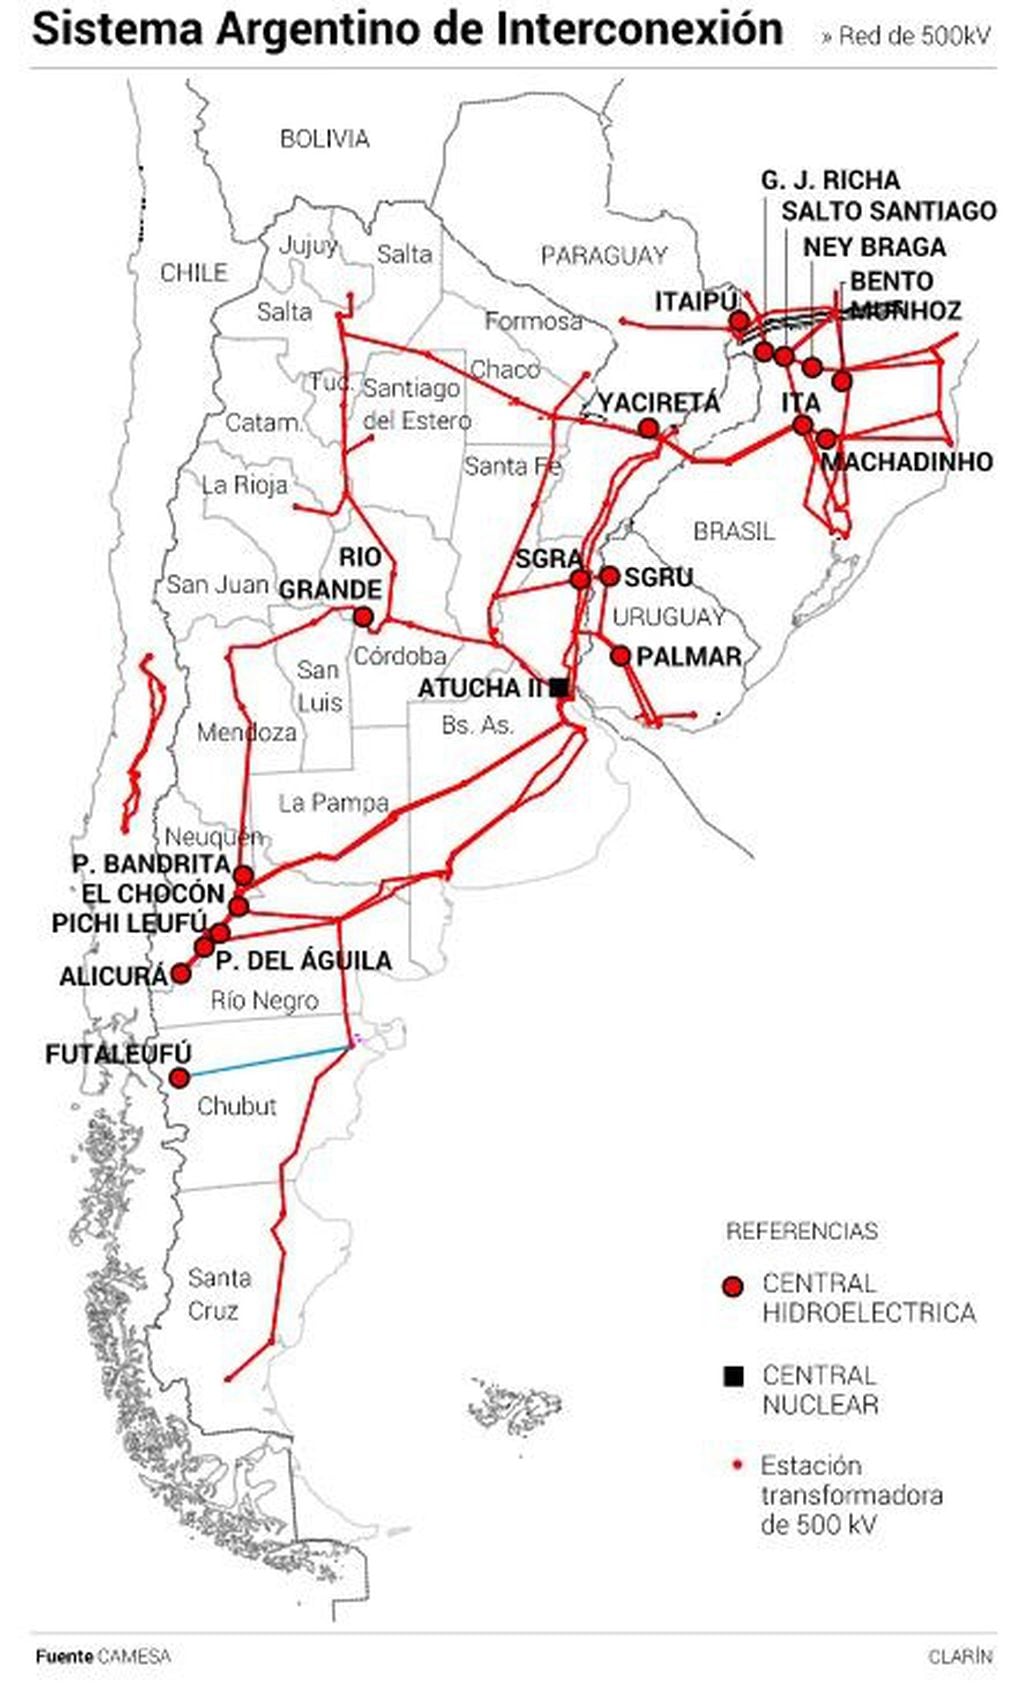 Sistema Argentino de Interconexión (Foto: Clarín)